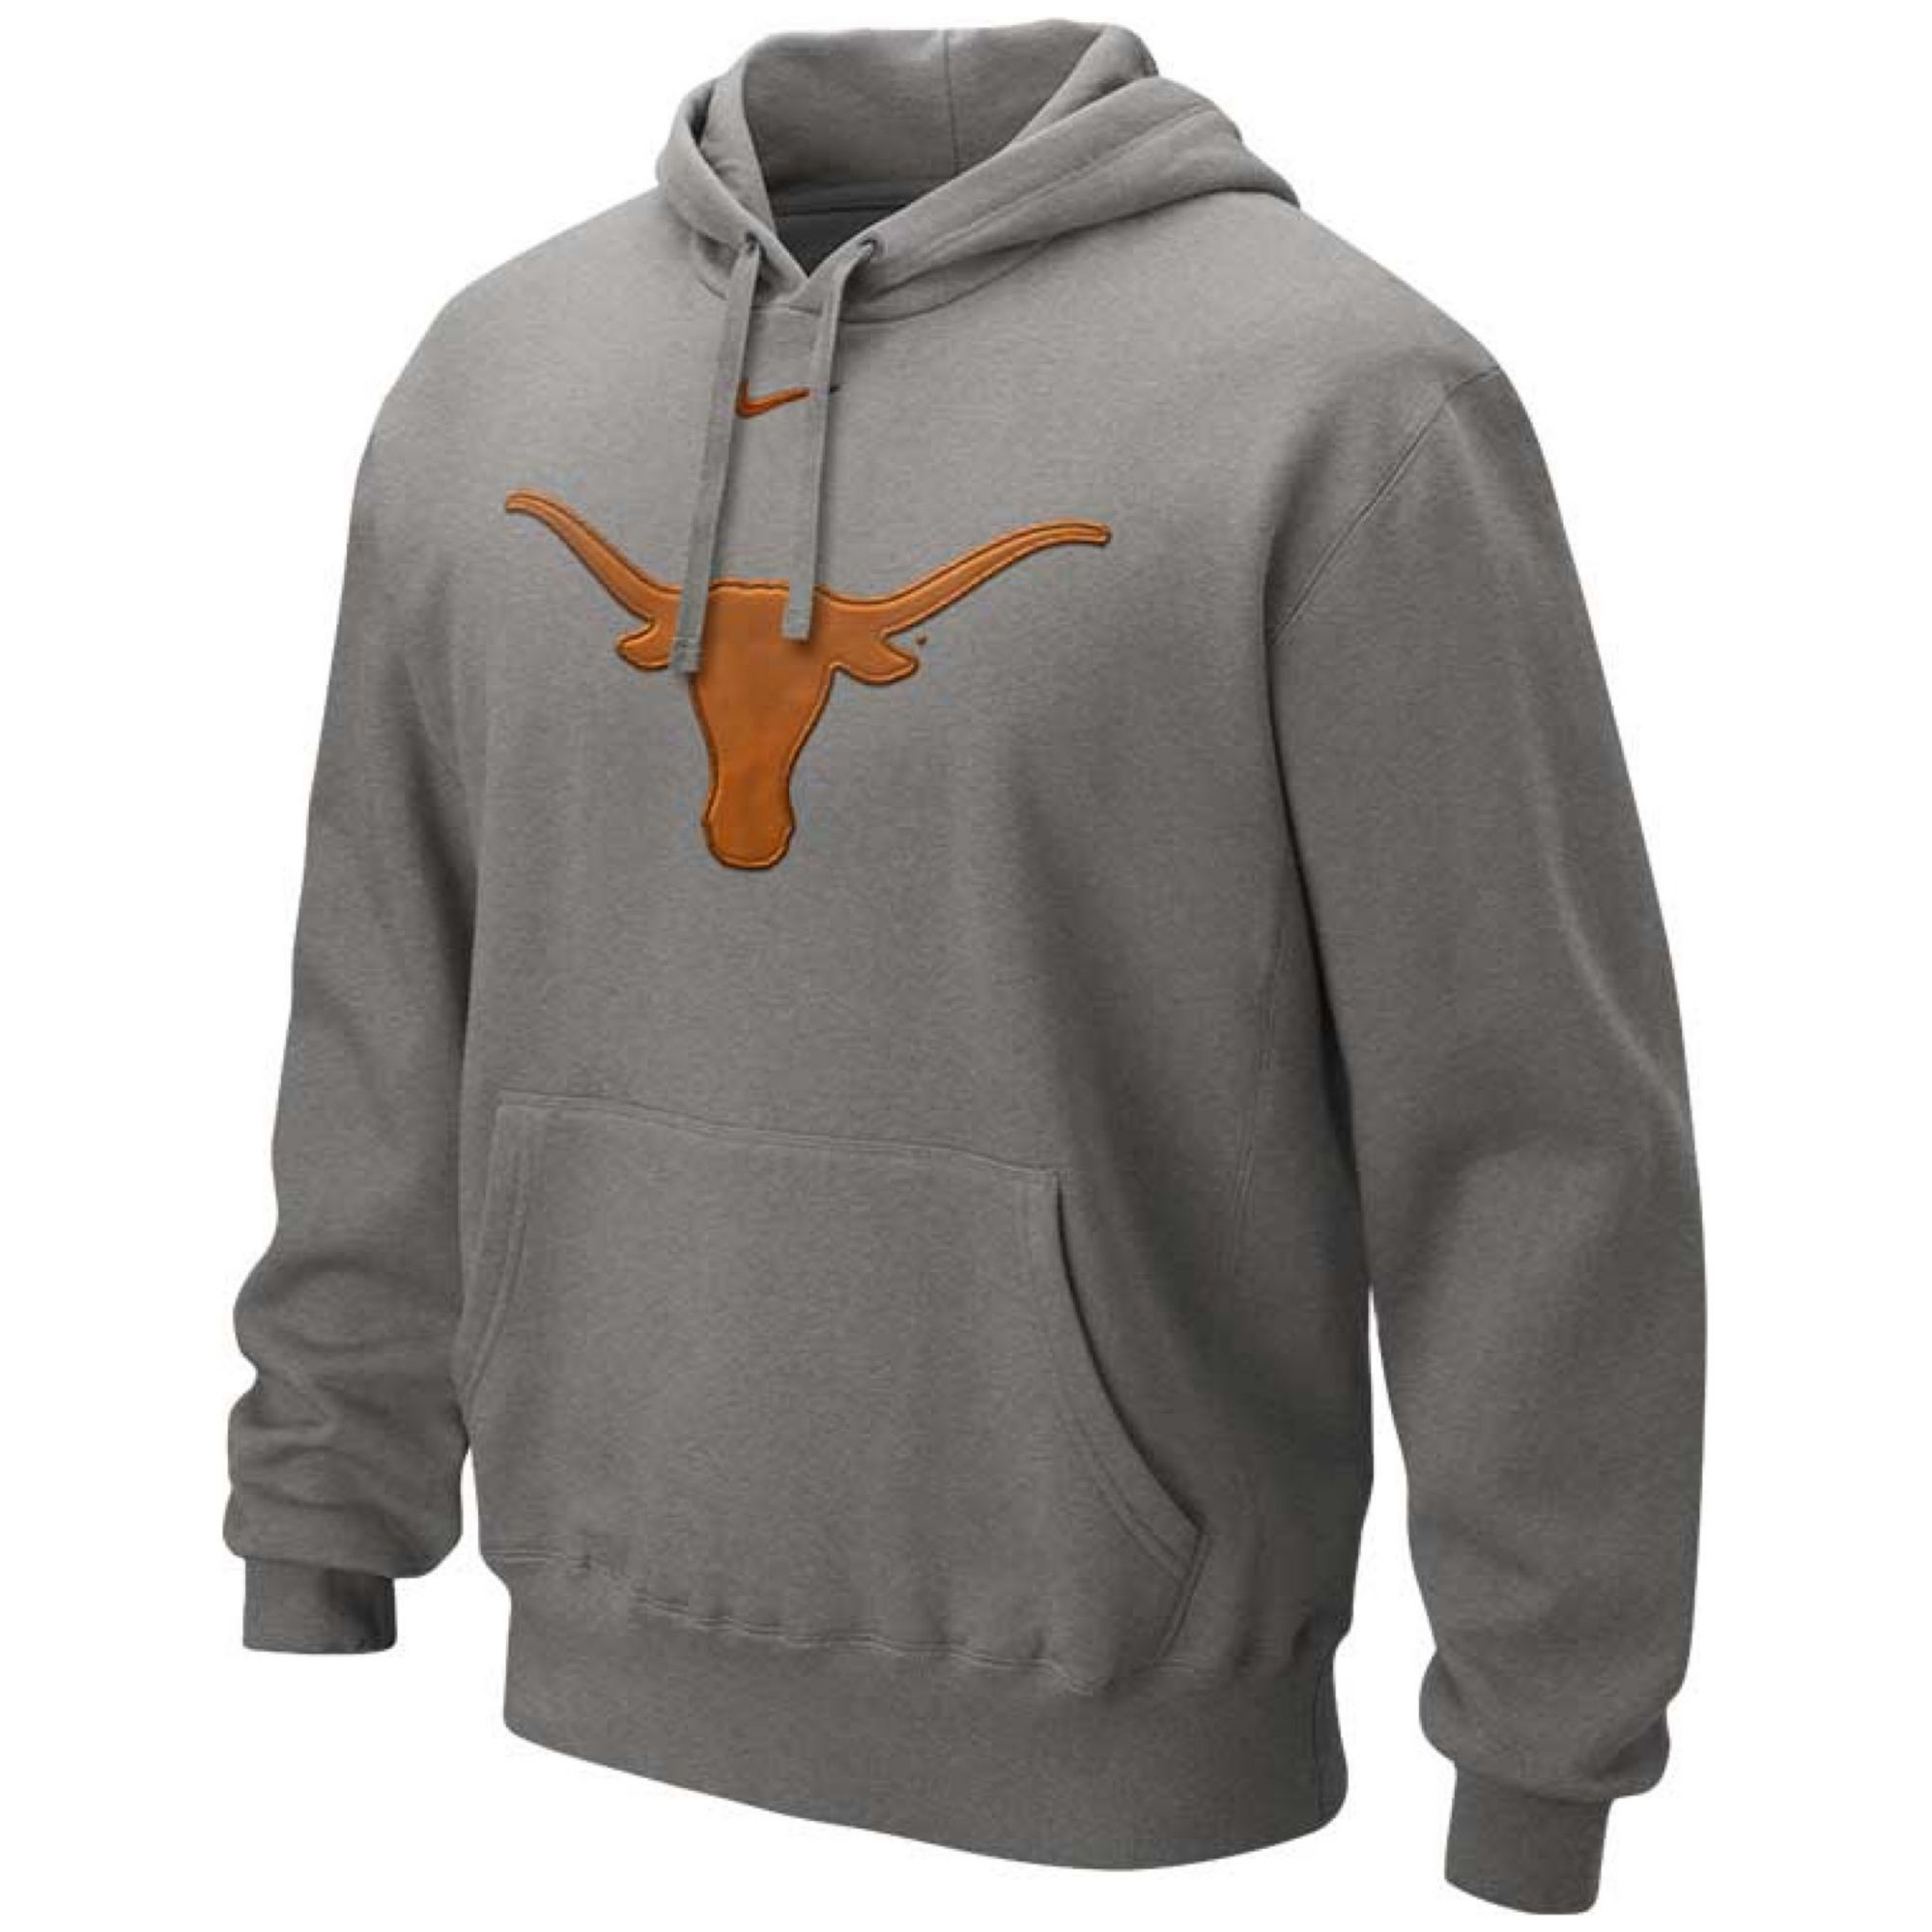 Nike Gray Mens Texas Longhorns Hoodie Sweatshirt Product 1 15978360 0 193782291 Normal 